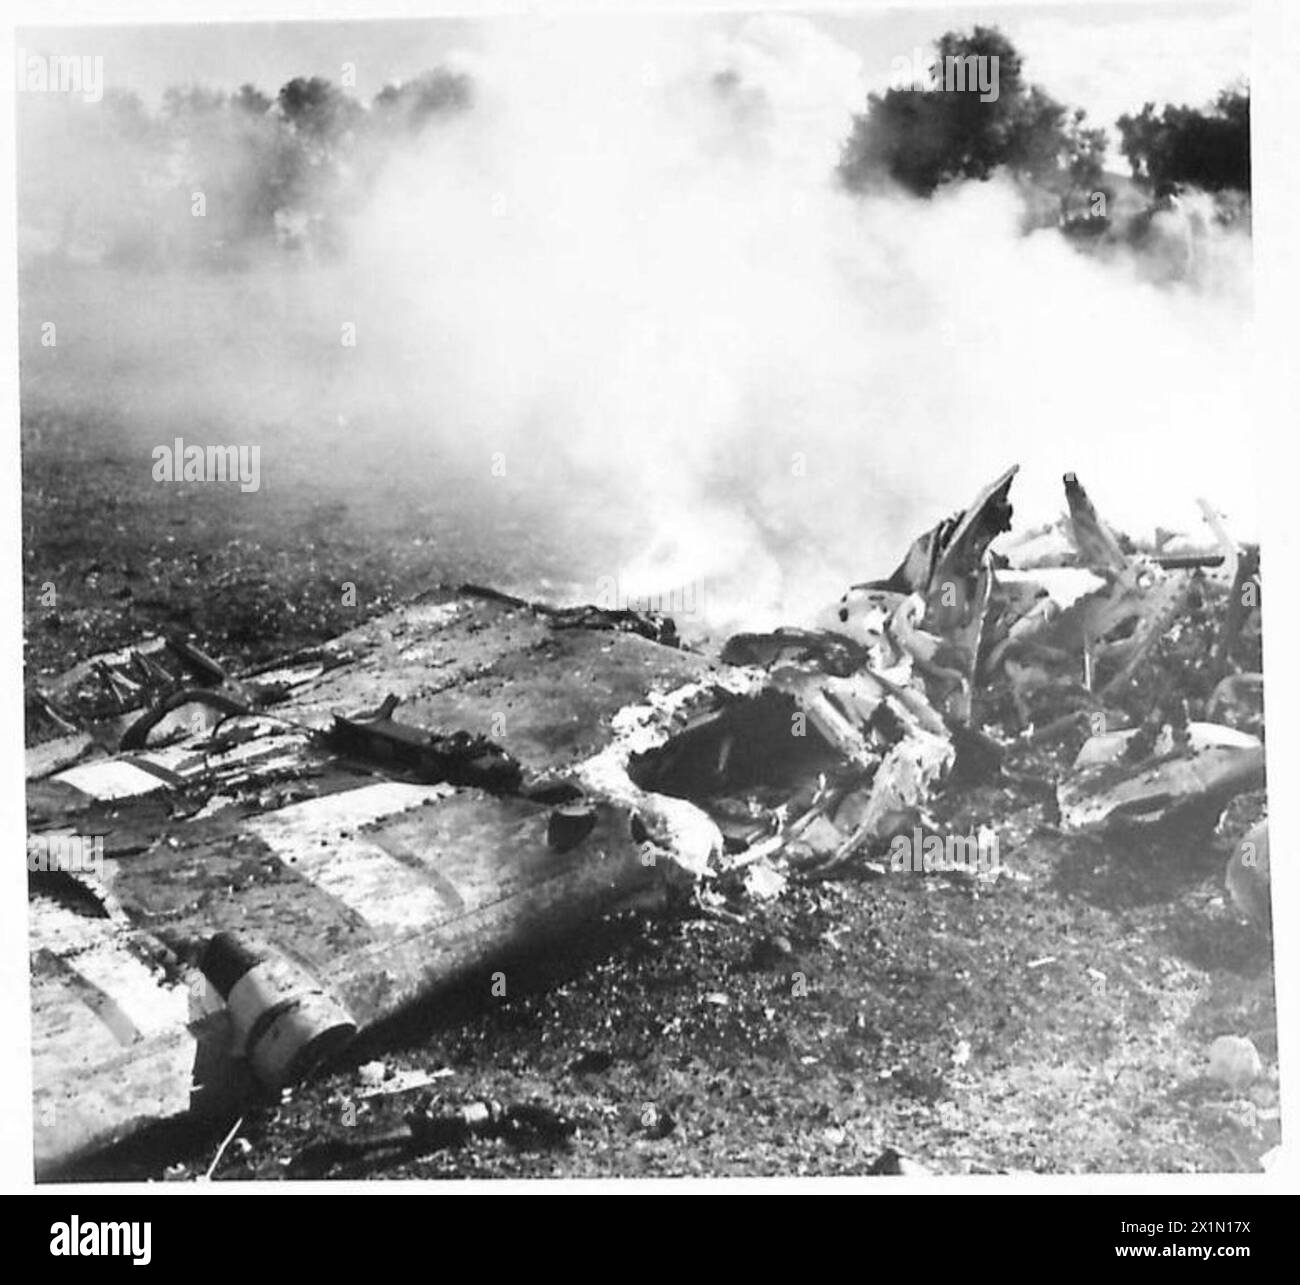 L'ESERCITO BRITANNICO NELLA CAMPAGNA IN TUNISIA, DAL 1942 NOVEMBRE al 1943 MAGGIO - uno dei due JU 88 abbattuti a Bou Arada, l'equipaggio fu bruciato a morte. La battaglia di Bou Arada si intensificò di nuovo. I tedeschi attaccarono dalla "Two Tree Hill" con carri armati e fanteria. Le truppe del V corpo britannico in posizione sulla "Green Hill" (a circa 5000 metri di distanza dalla "Two Tree Hill") tennero e sconfissero l'attacco. 17 carri tedeschi furono distrutti dai cannoni britannici da 25 libbre. La battaglia continuò tutto il giorno con Messerschmitts e Junkers che bombardavano le posizioni britanniche. Uno ME e due JU 88 sono stati abbattuti. 18 gennaio 19 Foto Stock